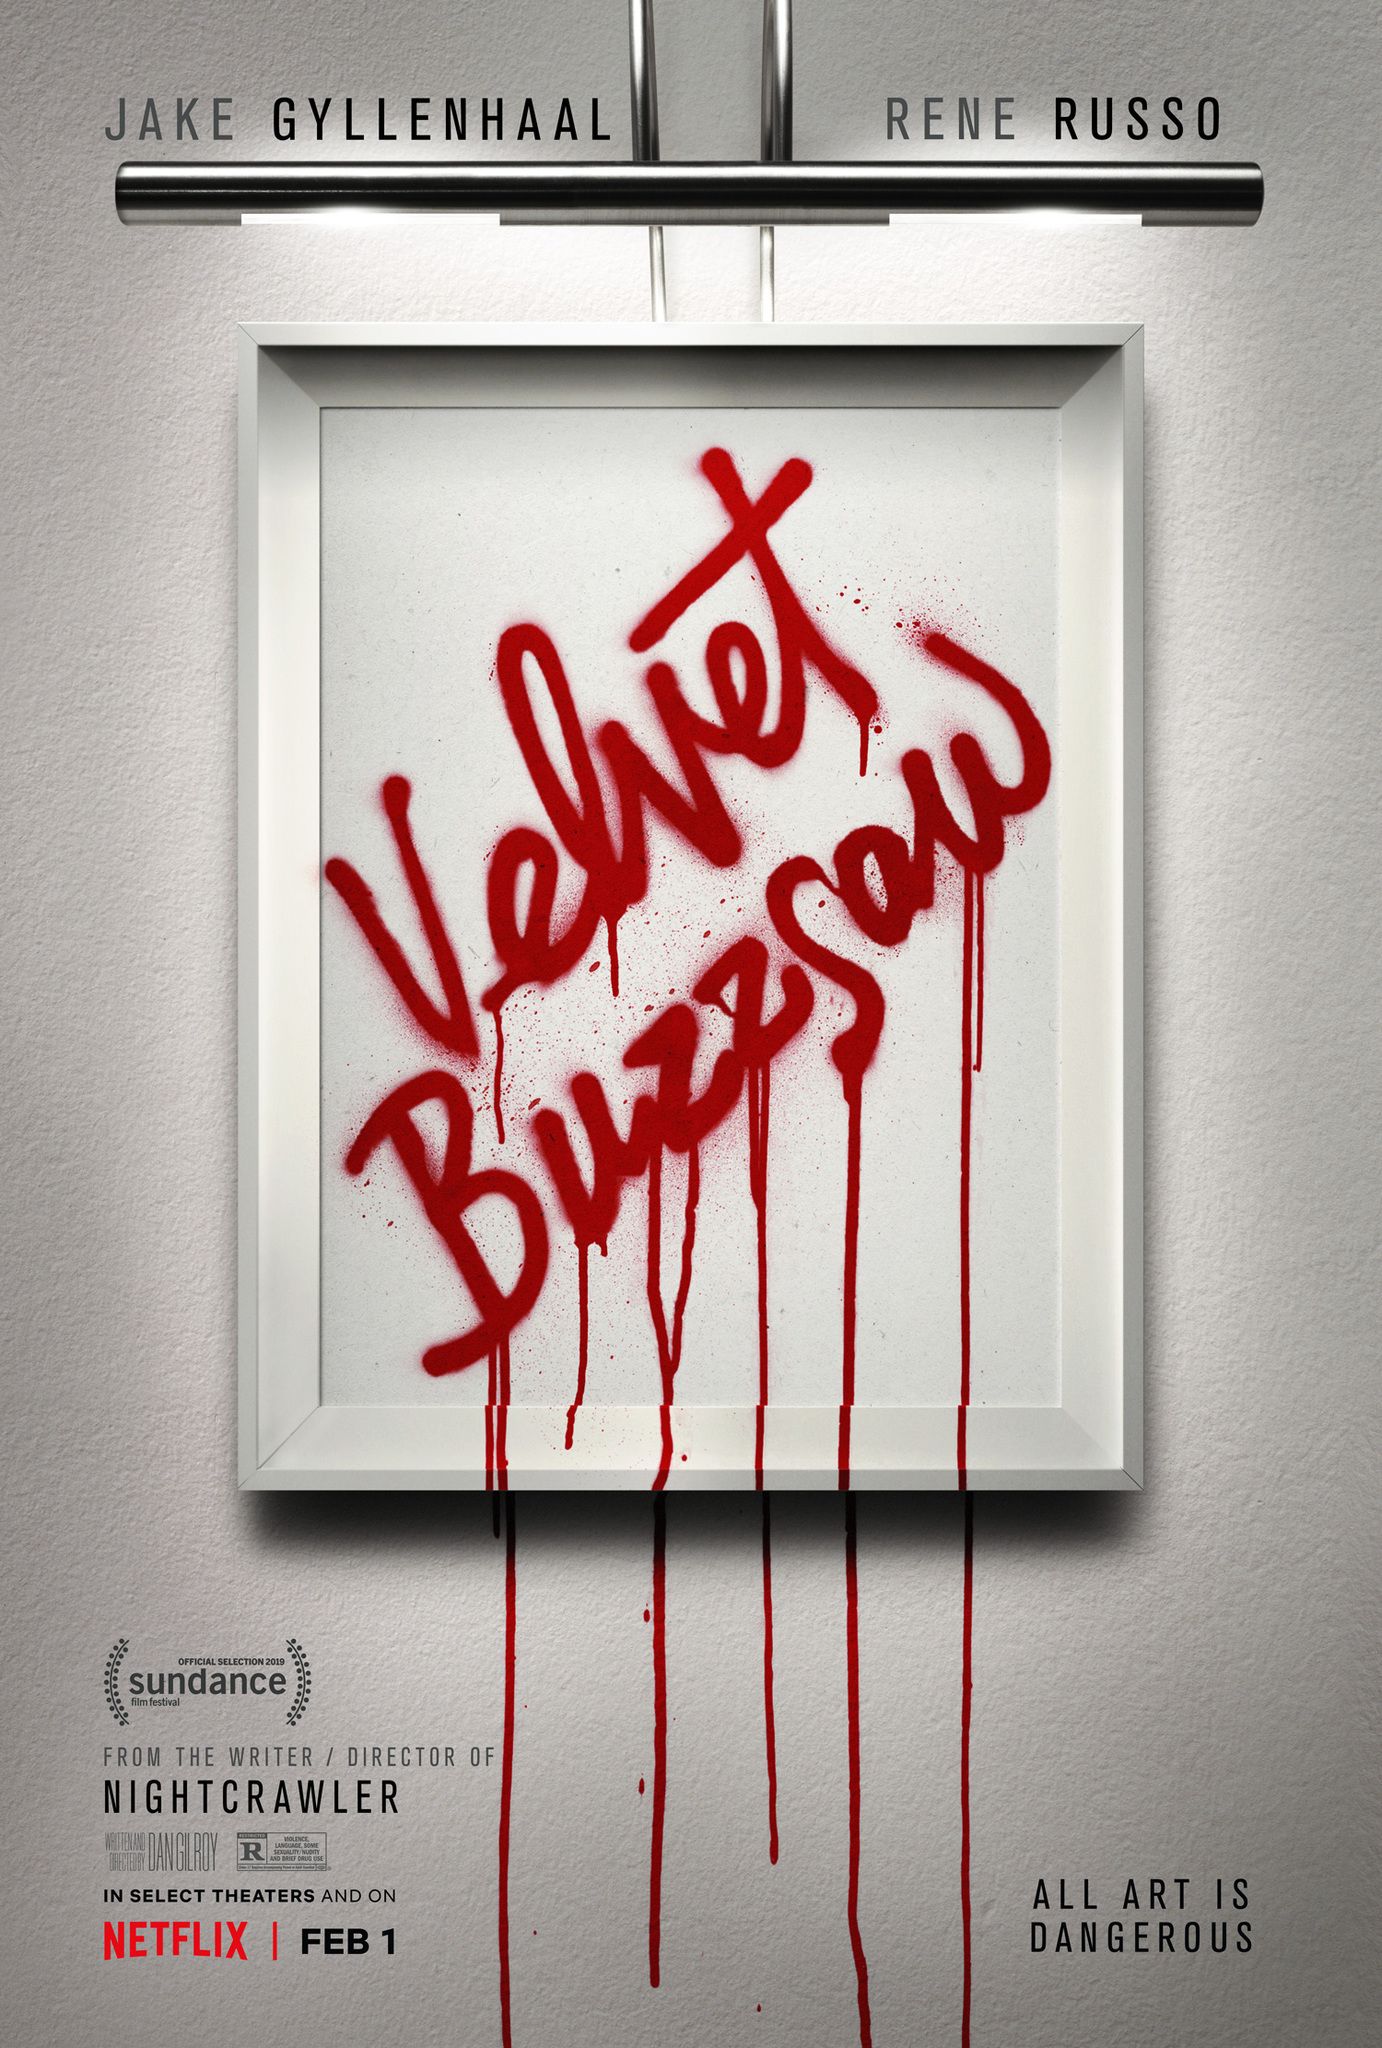 Velvet Buzzsaw Film Poster